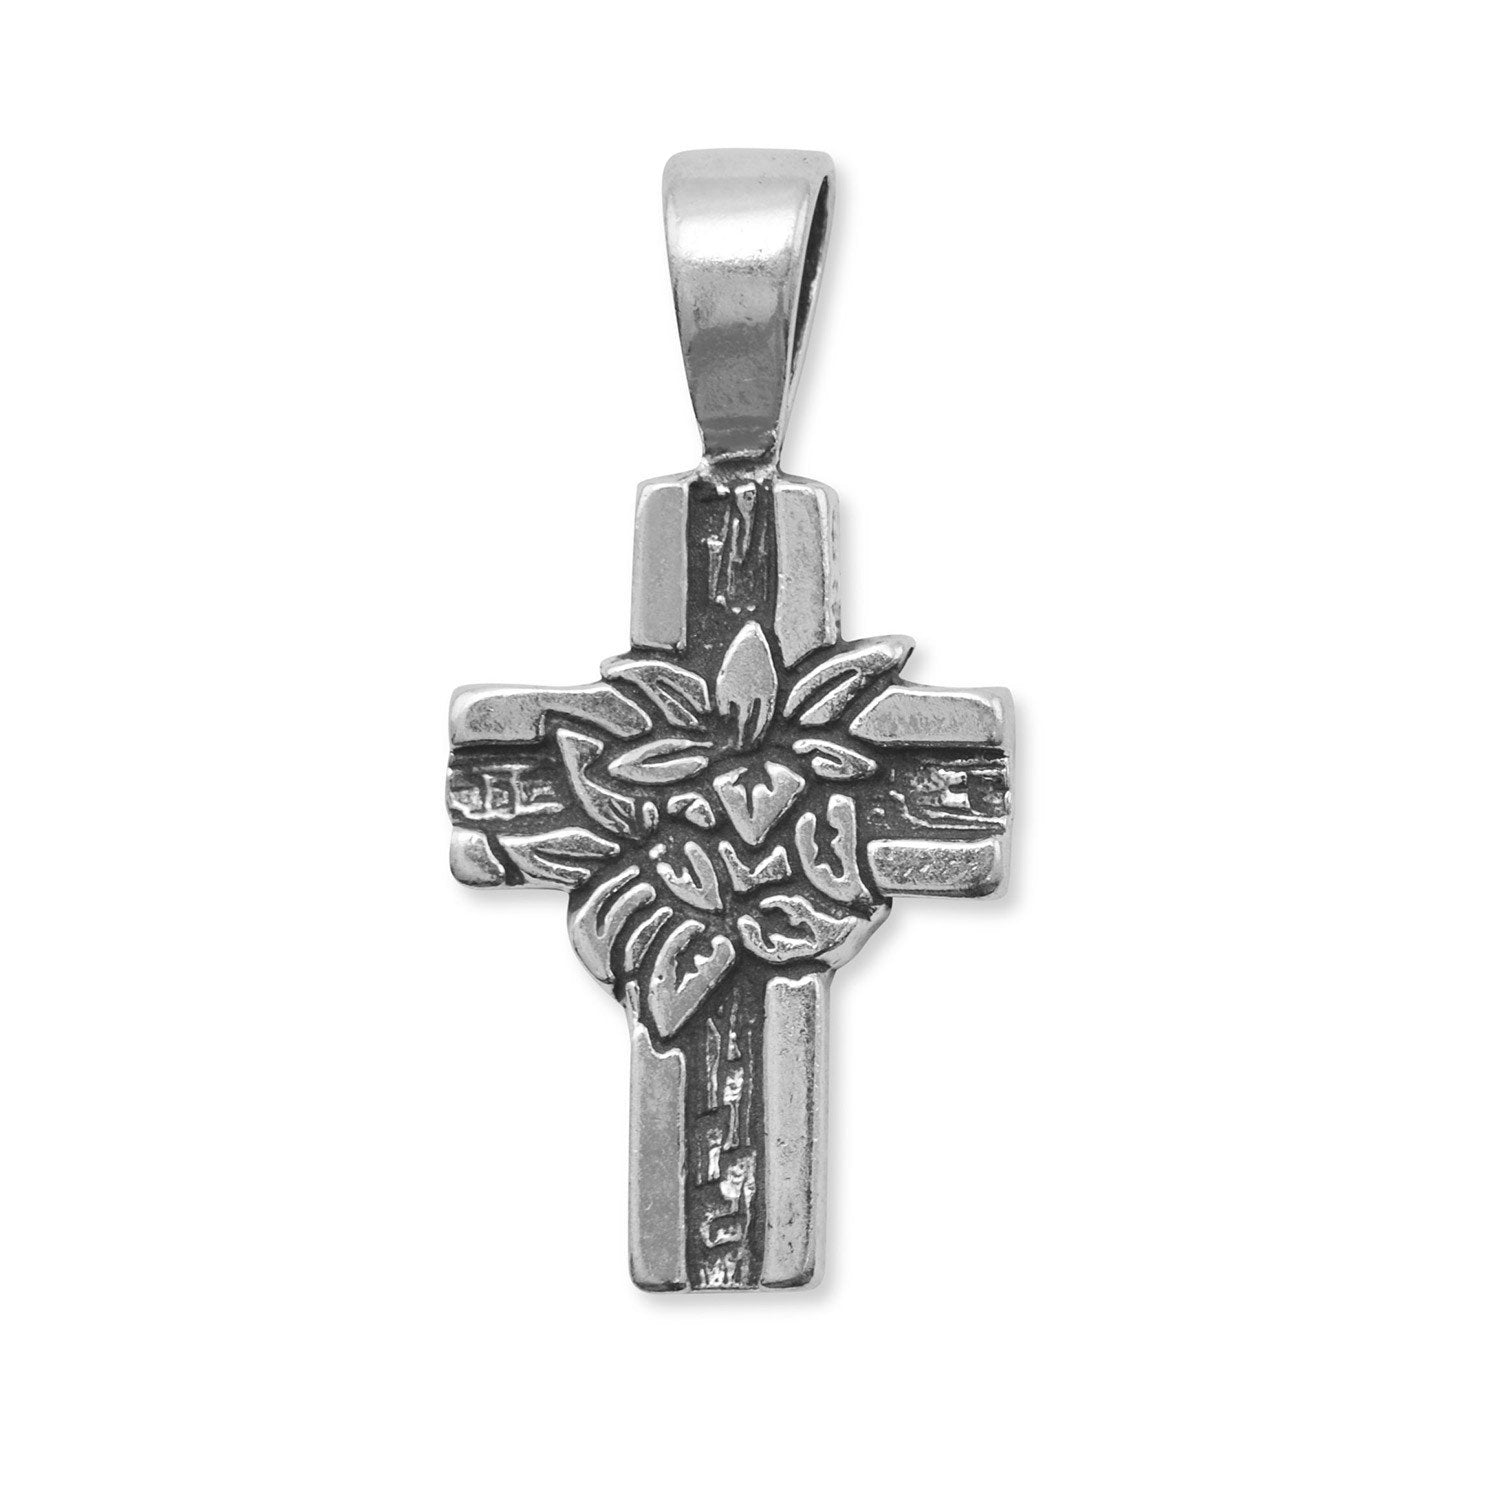 Oxidized Cross Pendant with Lilies - Joyeria Lady